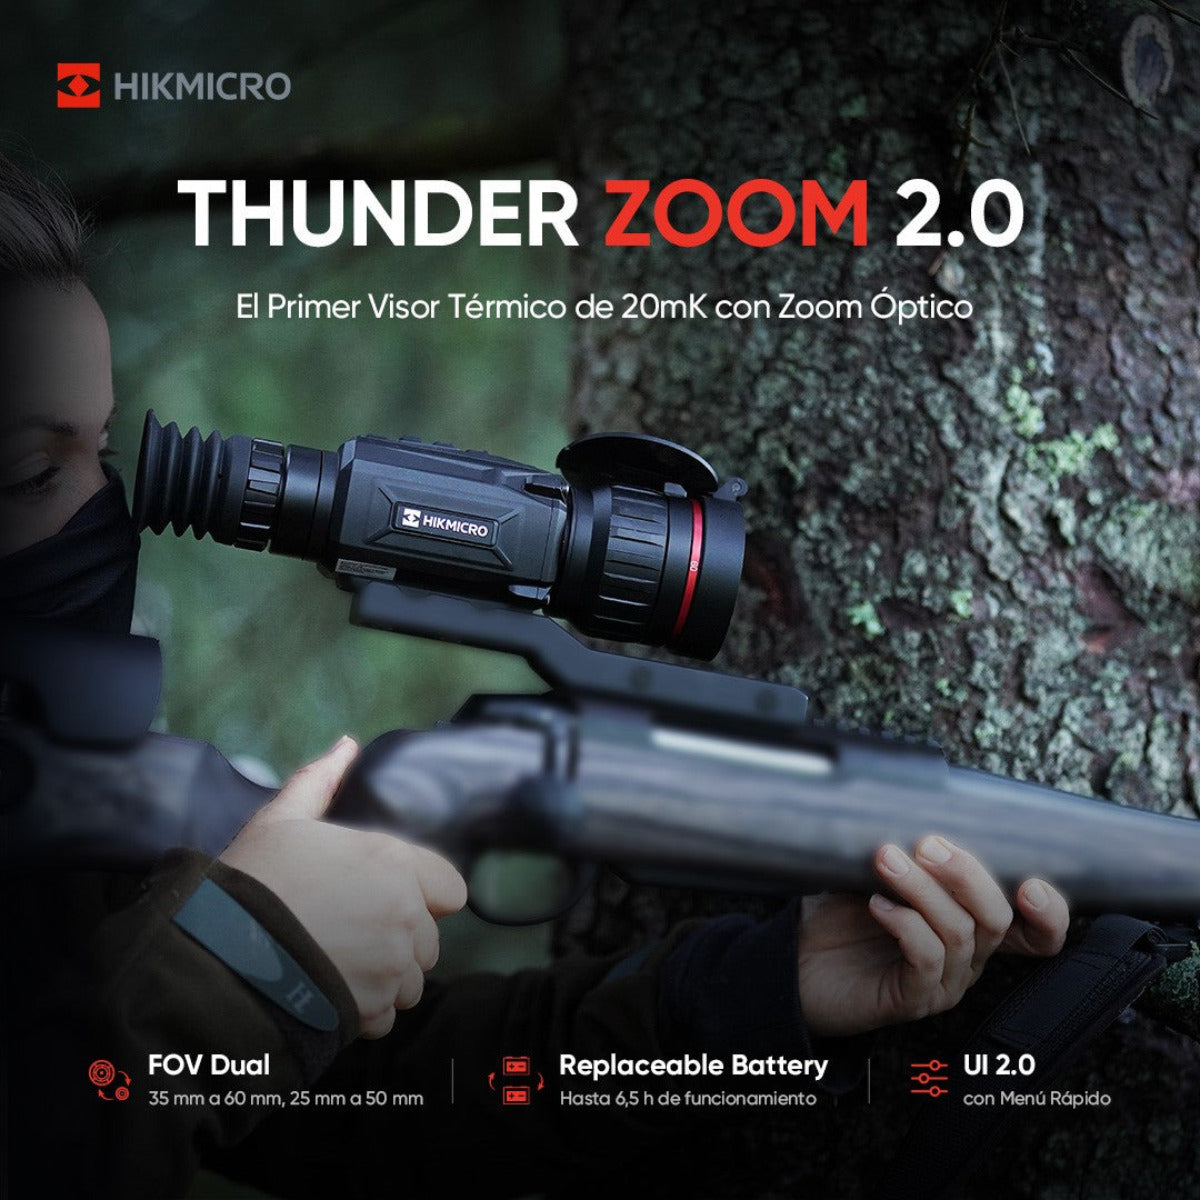 Visor Hikmicro Thunder Zoom TQ60Z 2.0